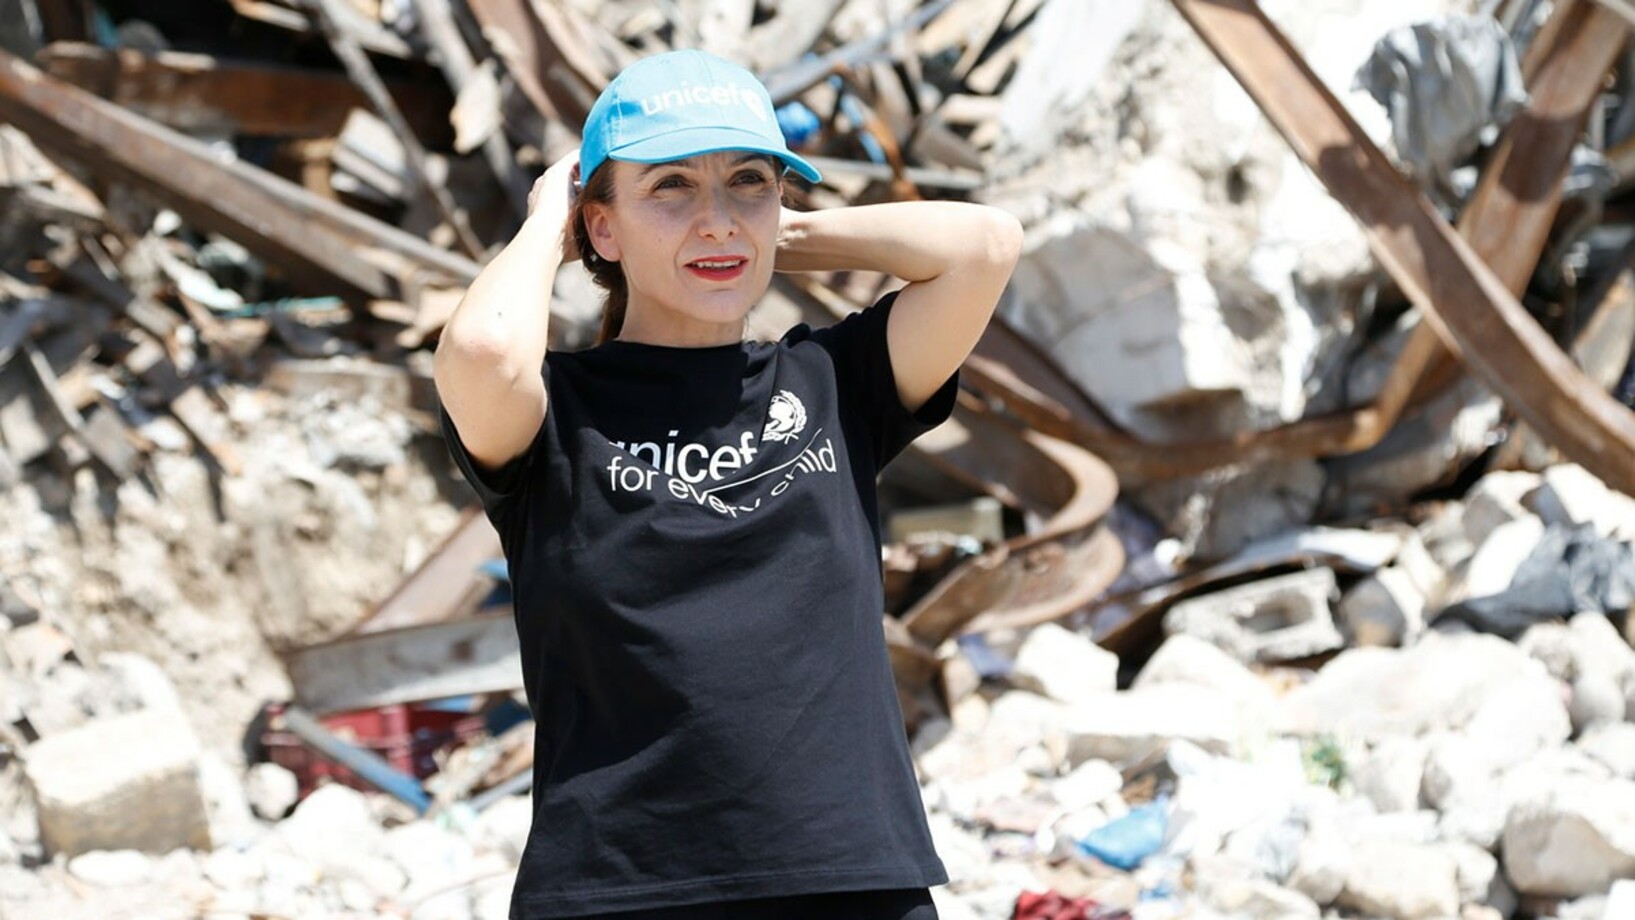 Regina de Dominicis, UNICEF